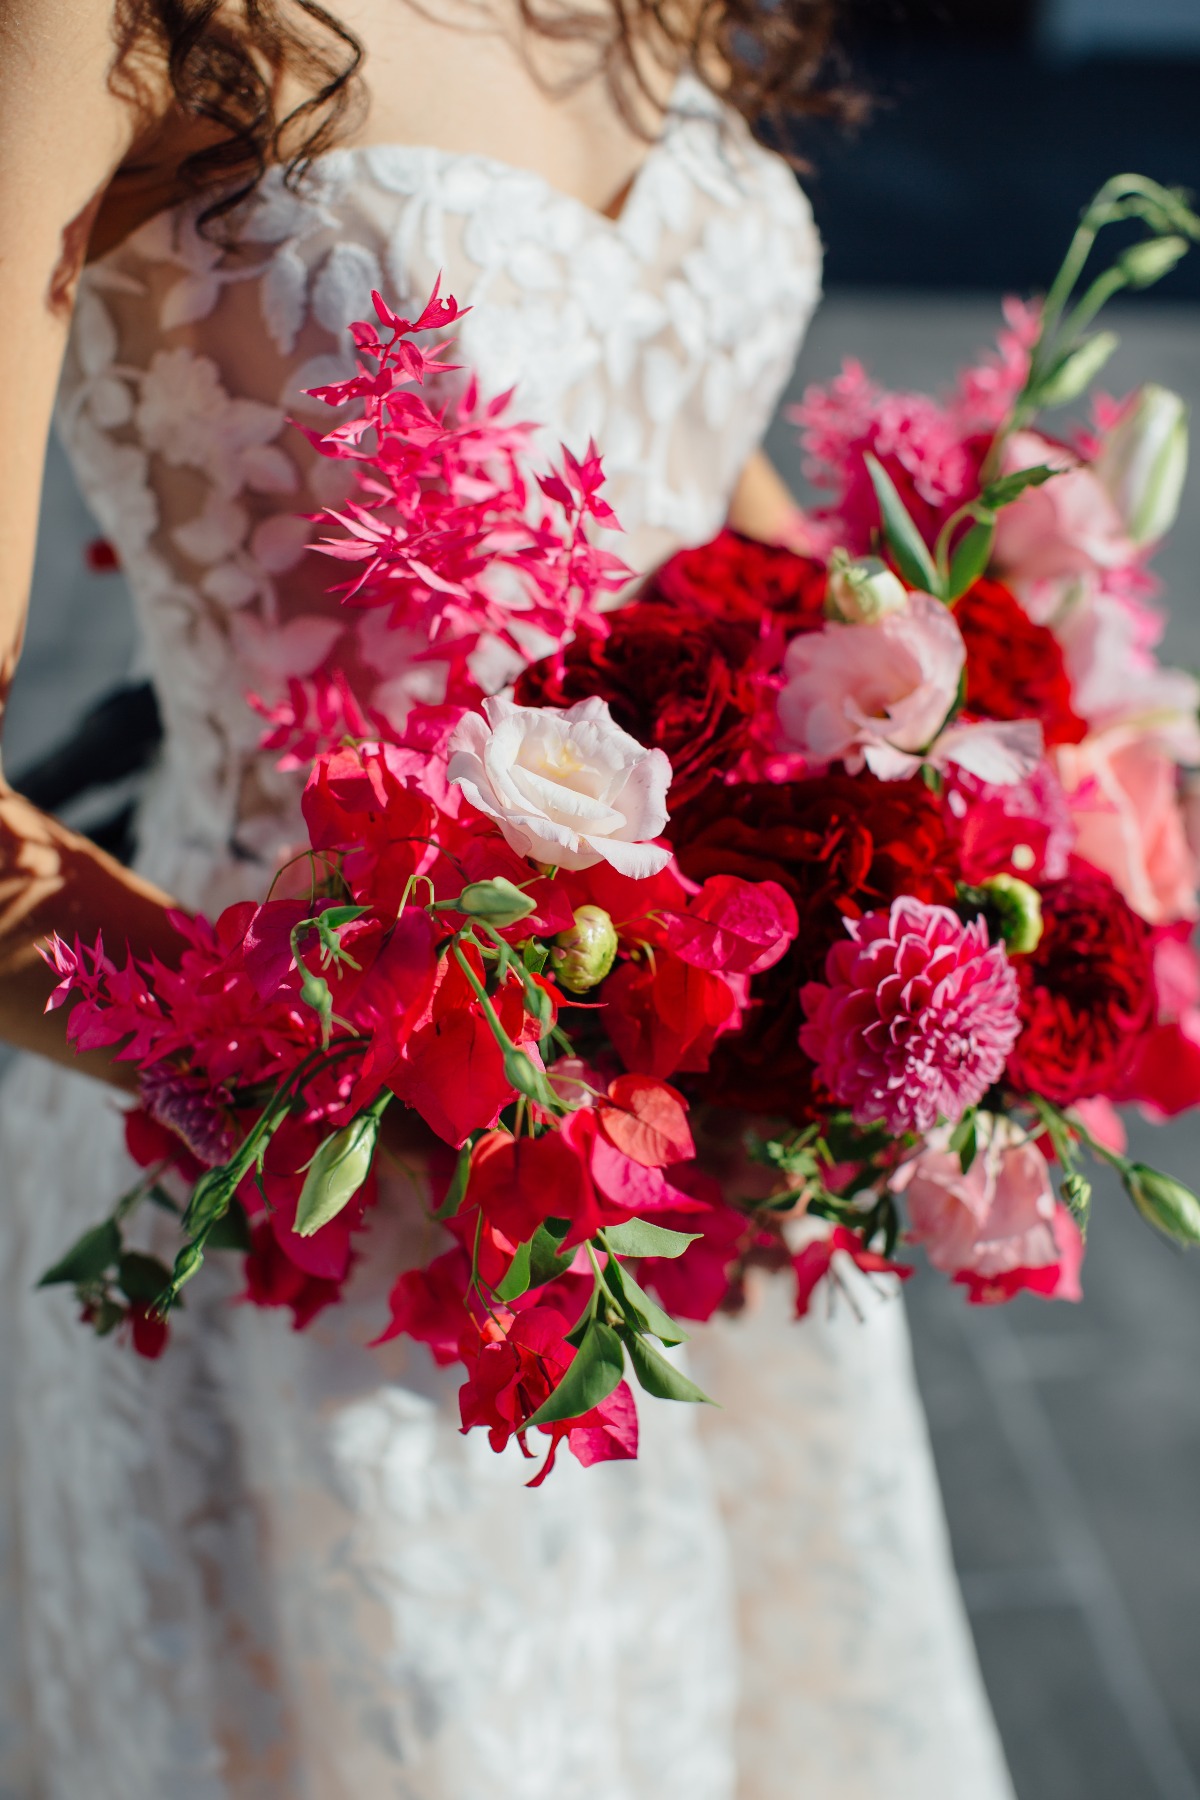 Downtown San Jose Spanish Wedding Photoshoot Turns Into Gorgeous Proposal